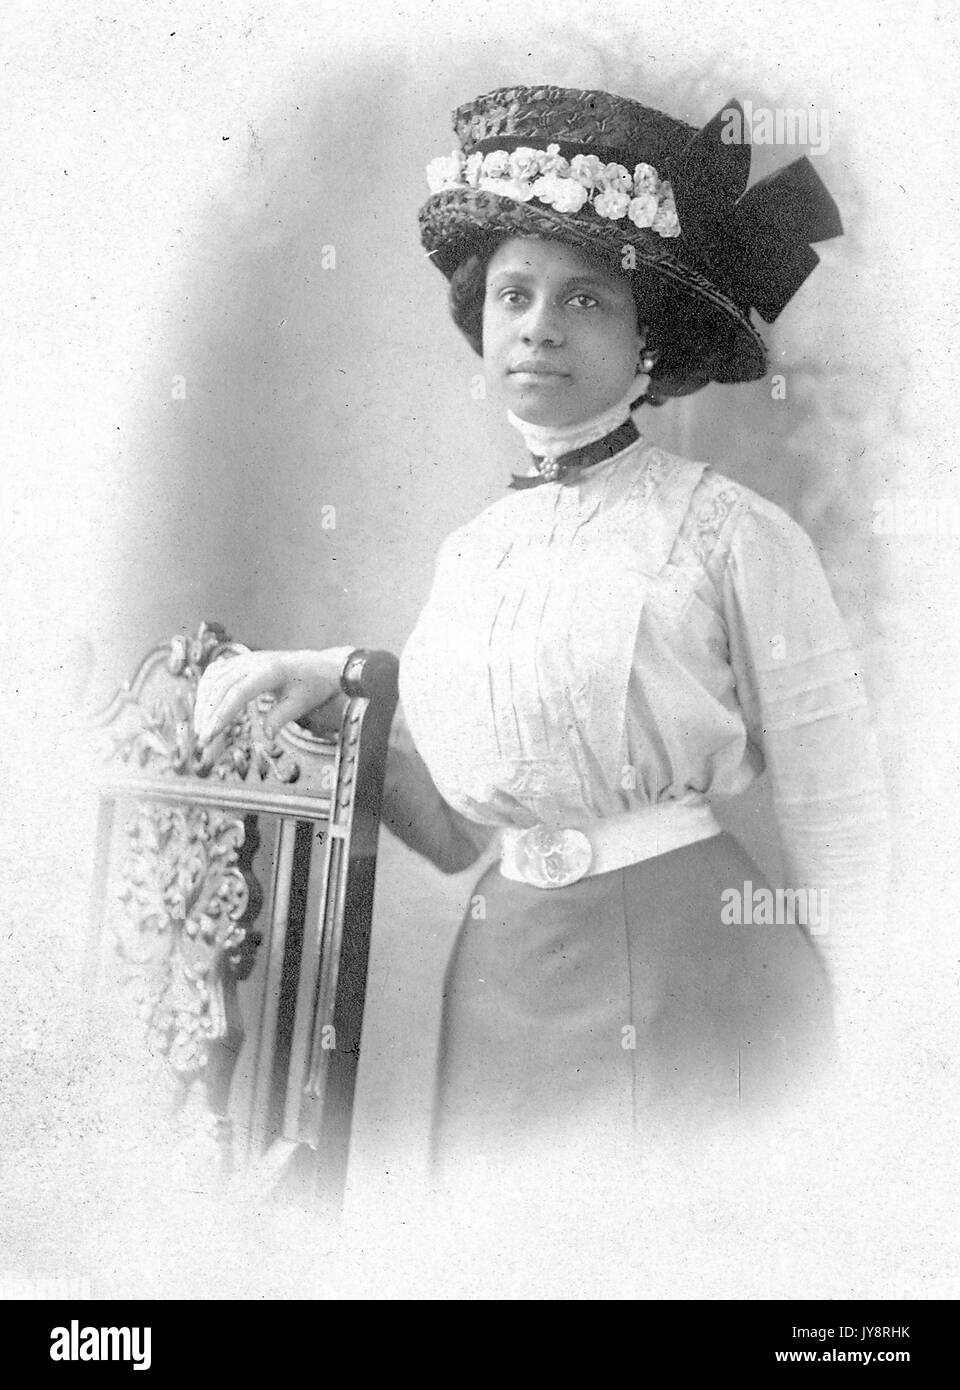 Portrait debout à mi-longueur de la jeune femme afro-américaine à côté de la chaise, portant un chemisier, une jupe, un chapeau élaboré, des boucles d'oreilles, et une expression neutre, éventuellement Philadelphie, Pennsylvanie, 1915. Banque D'Images